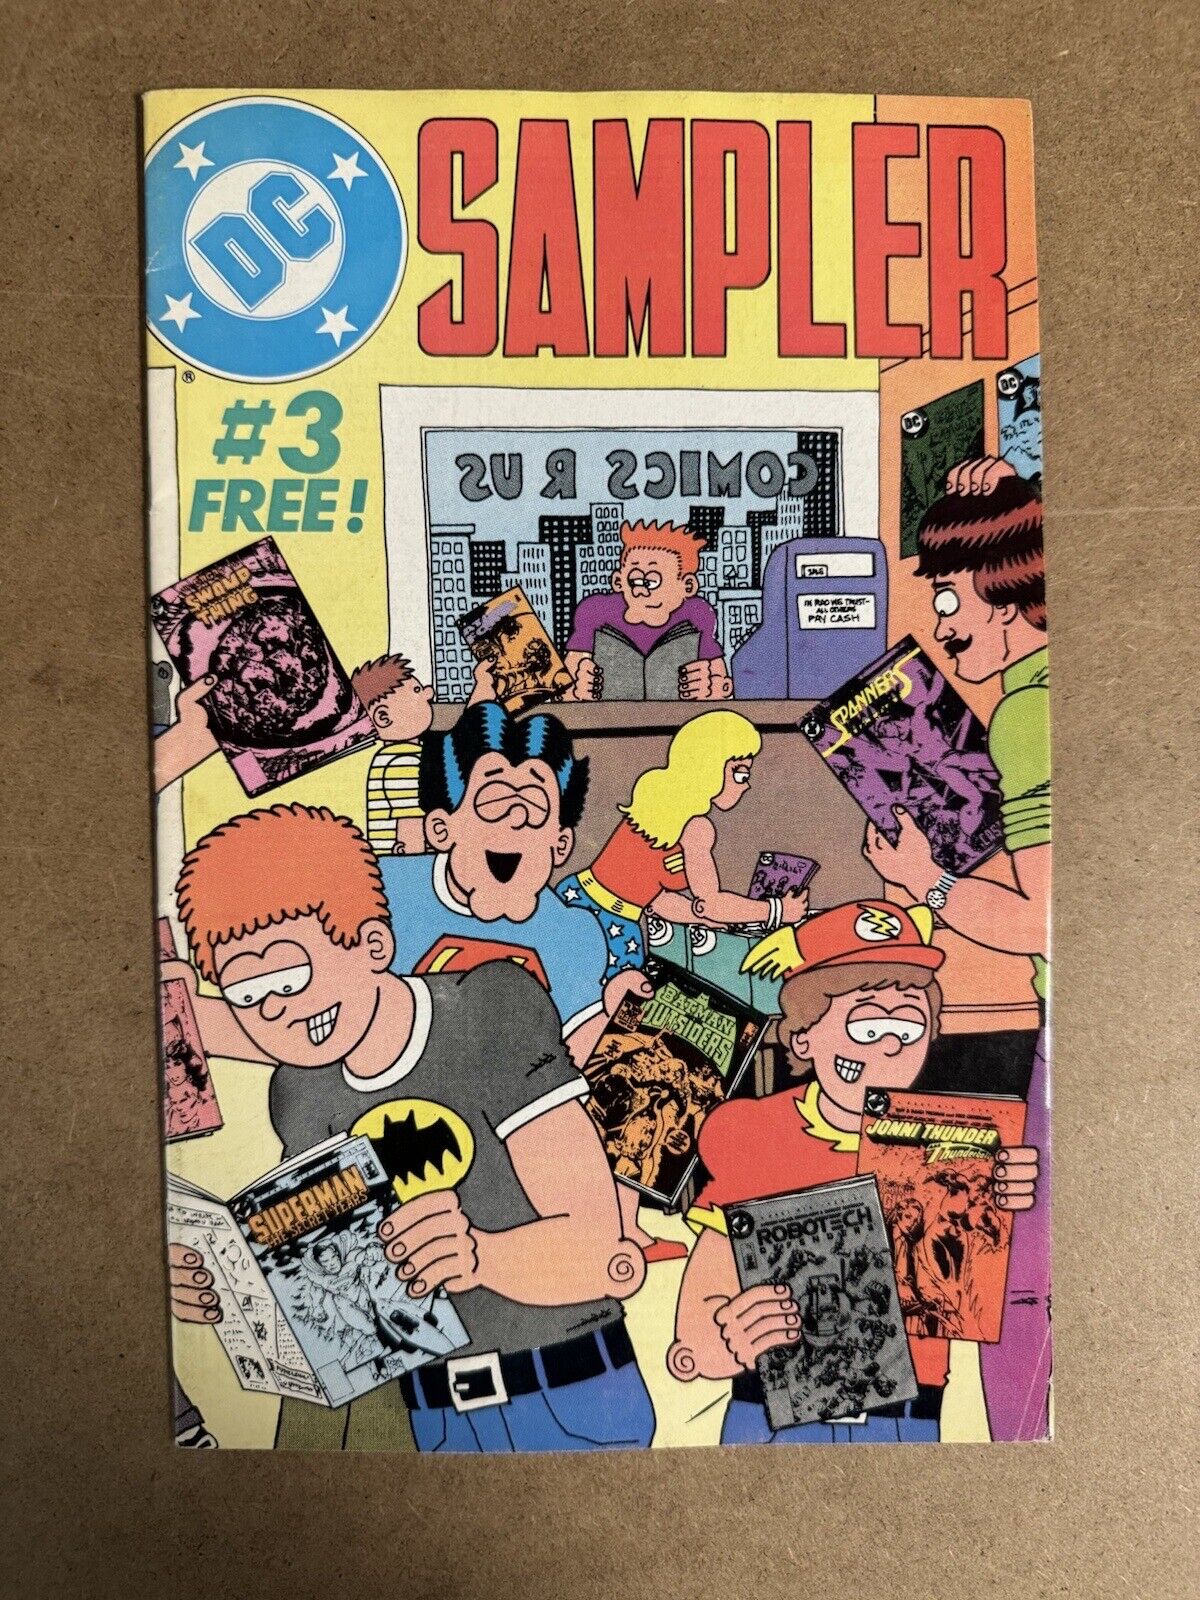 DC Sampler #3 - Nov 1984 - Minor Key - (828A)